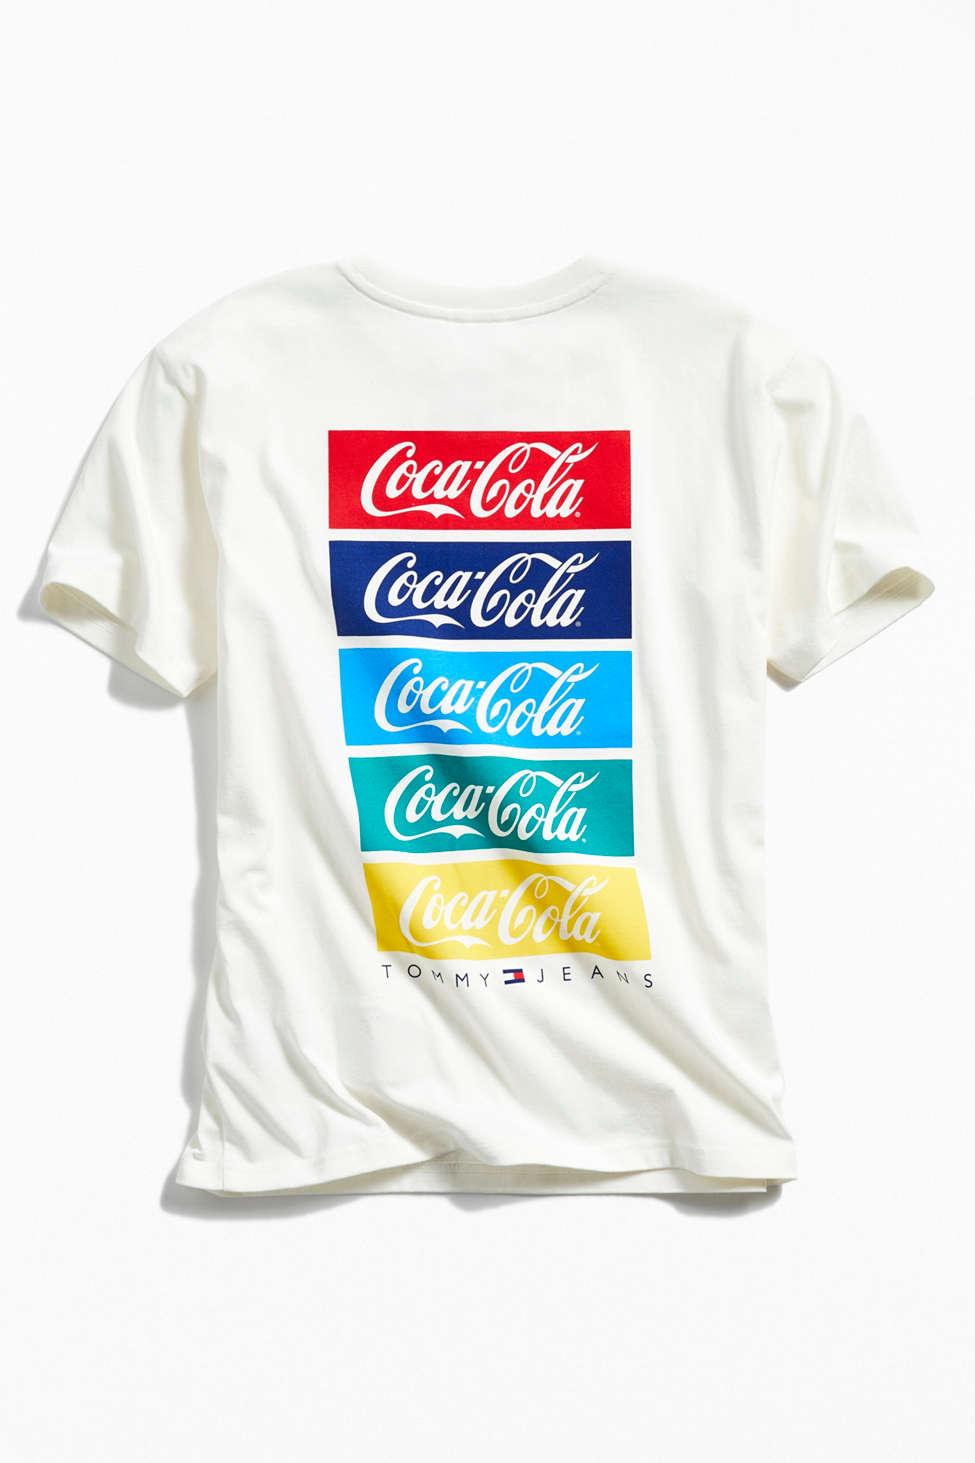 hilfiger coca cola